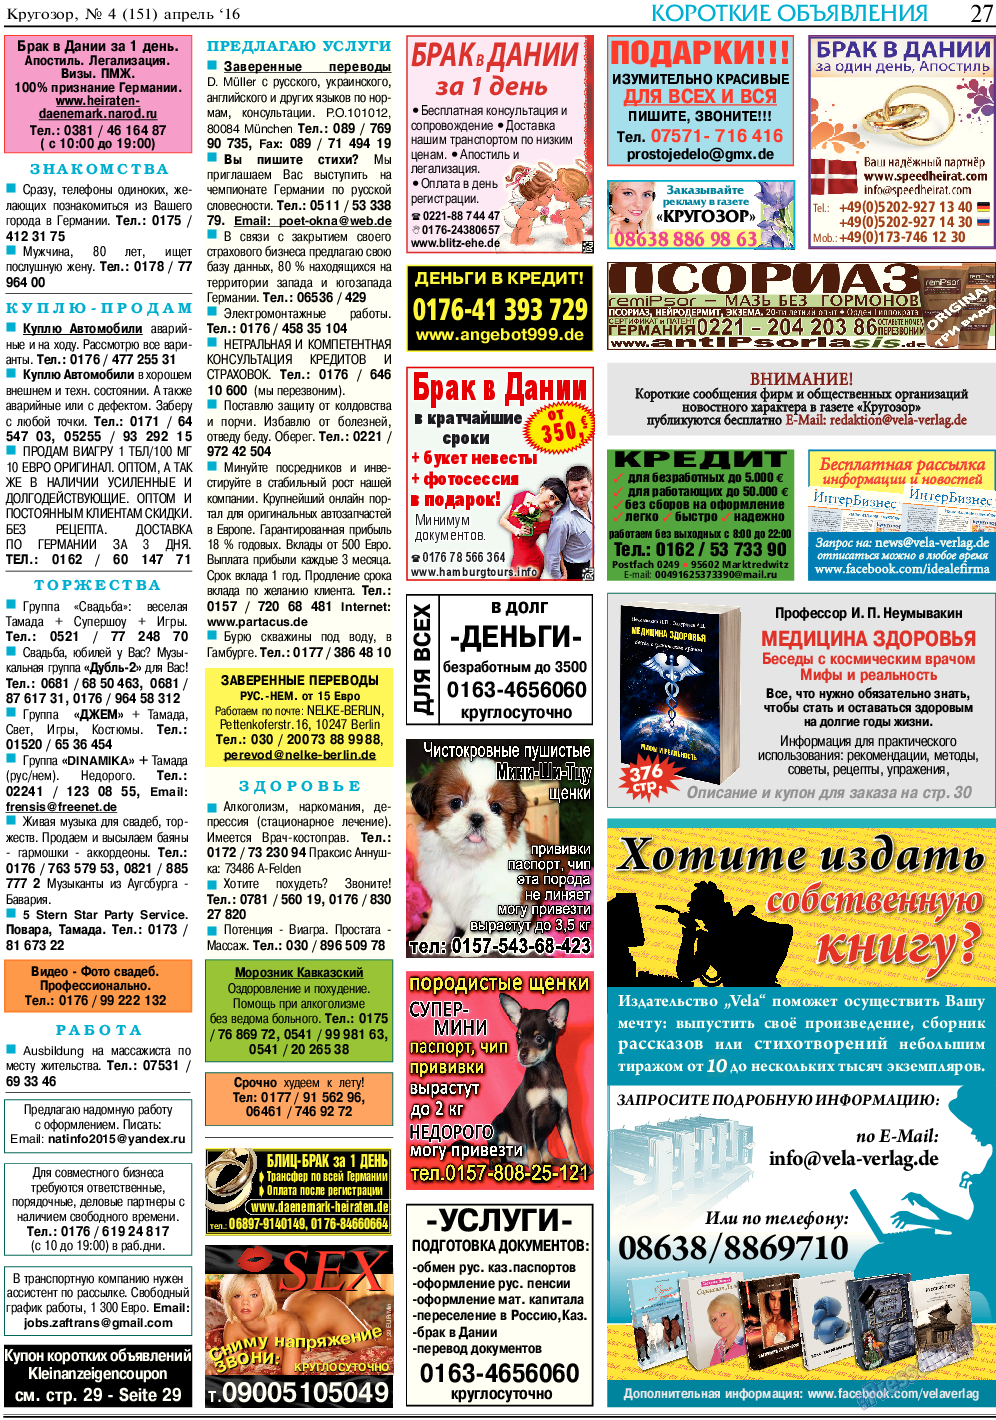 Кругозор, газета. 2016 №4 стр.27